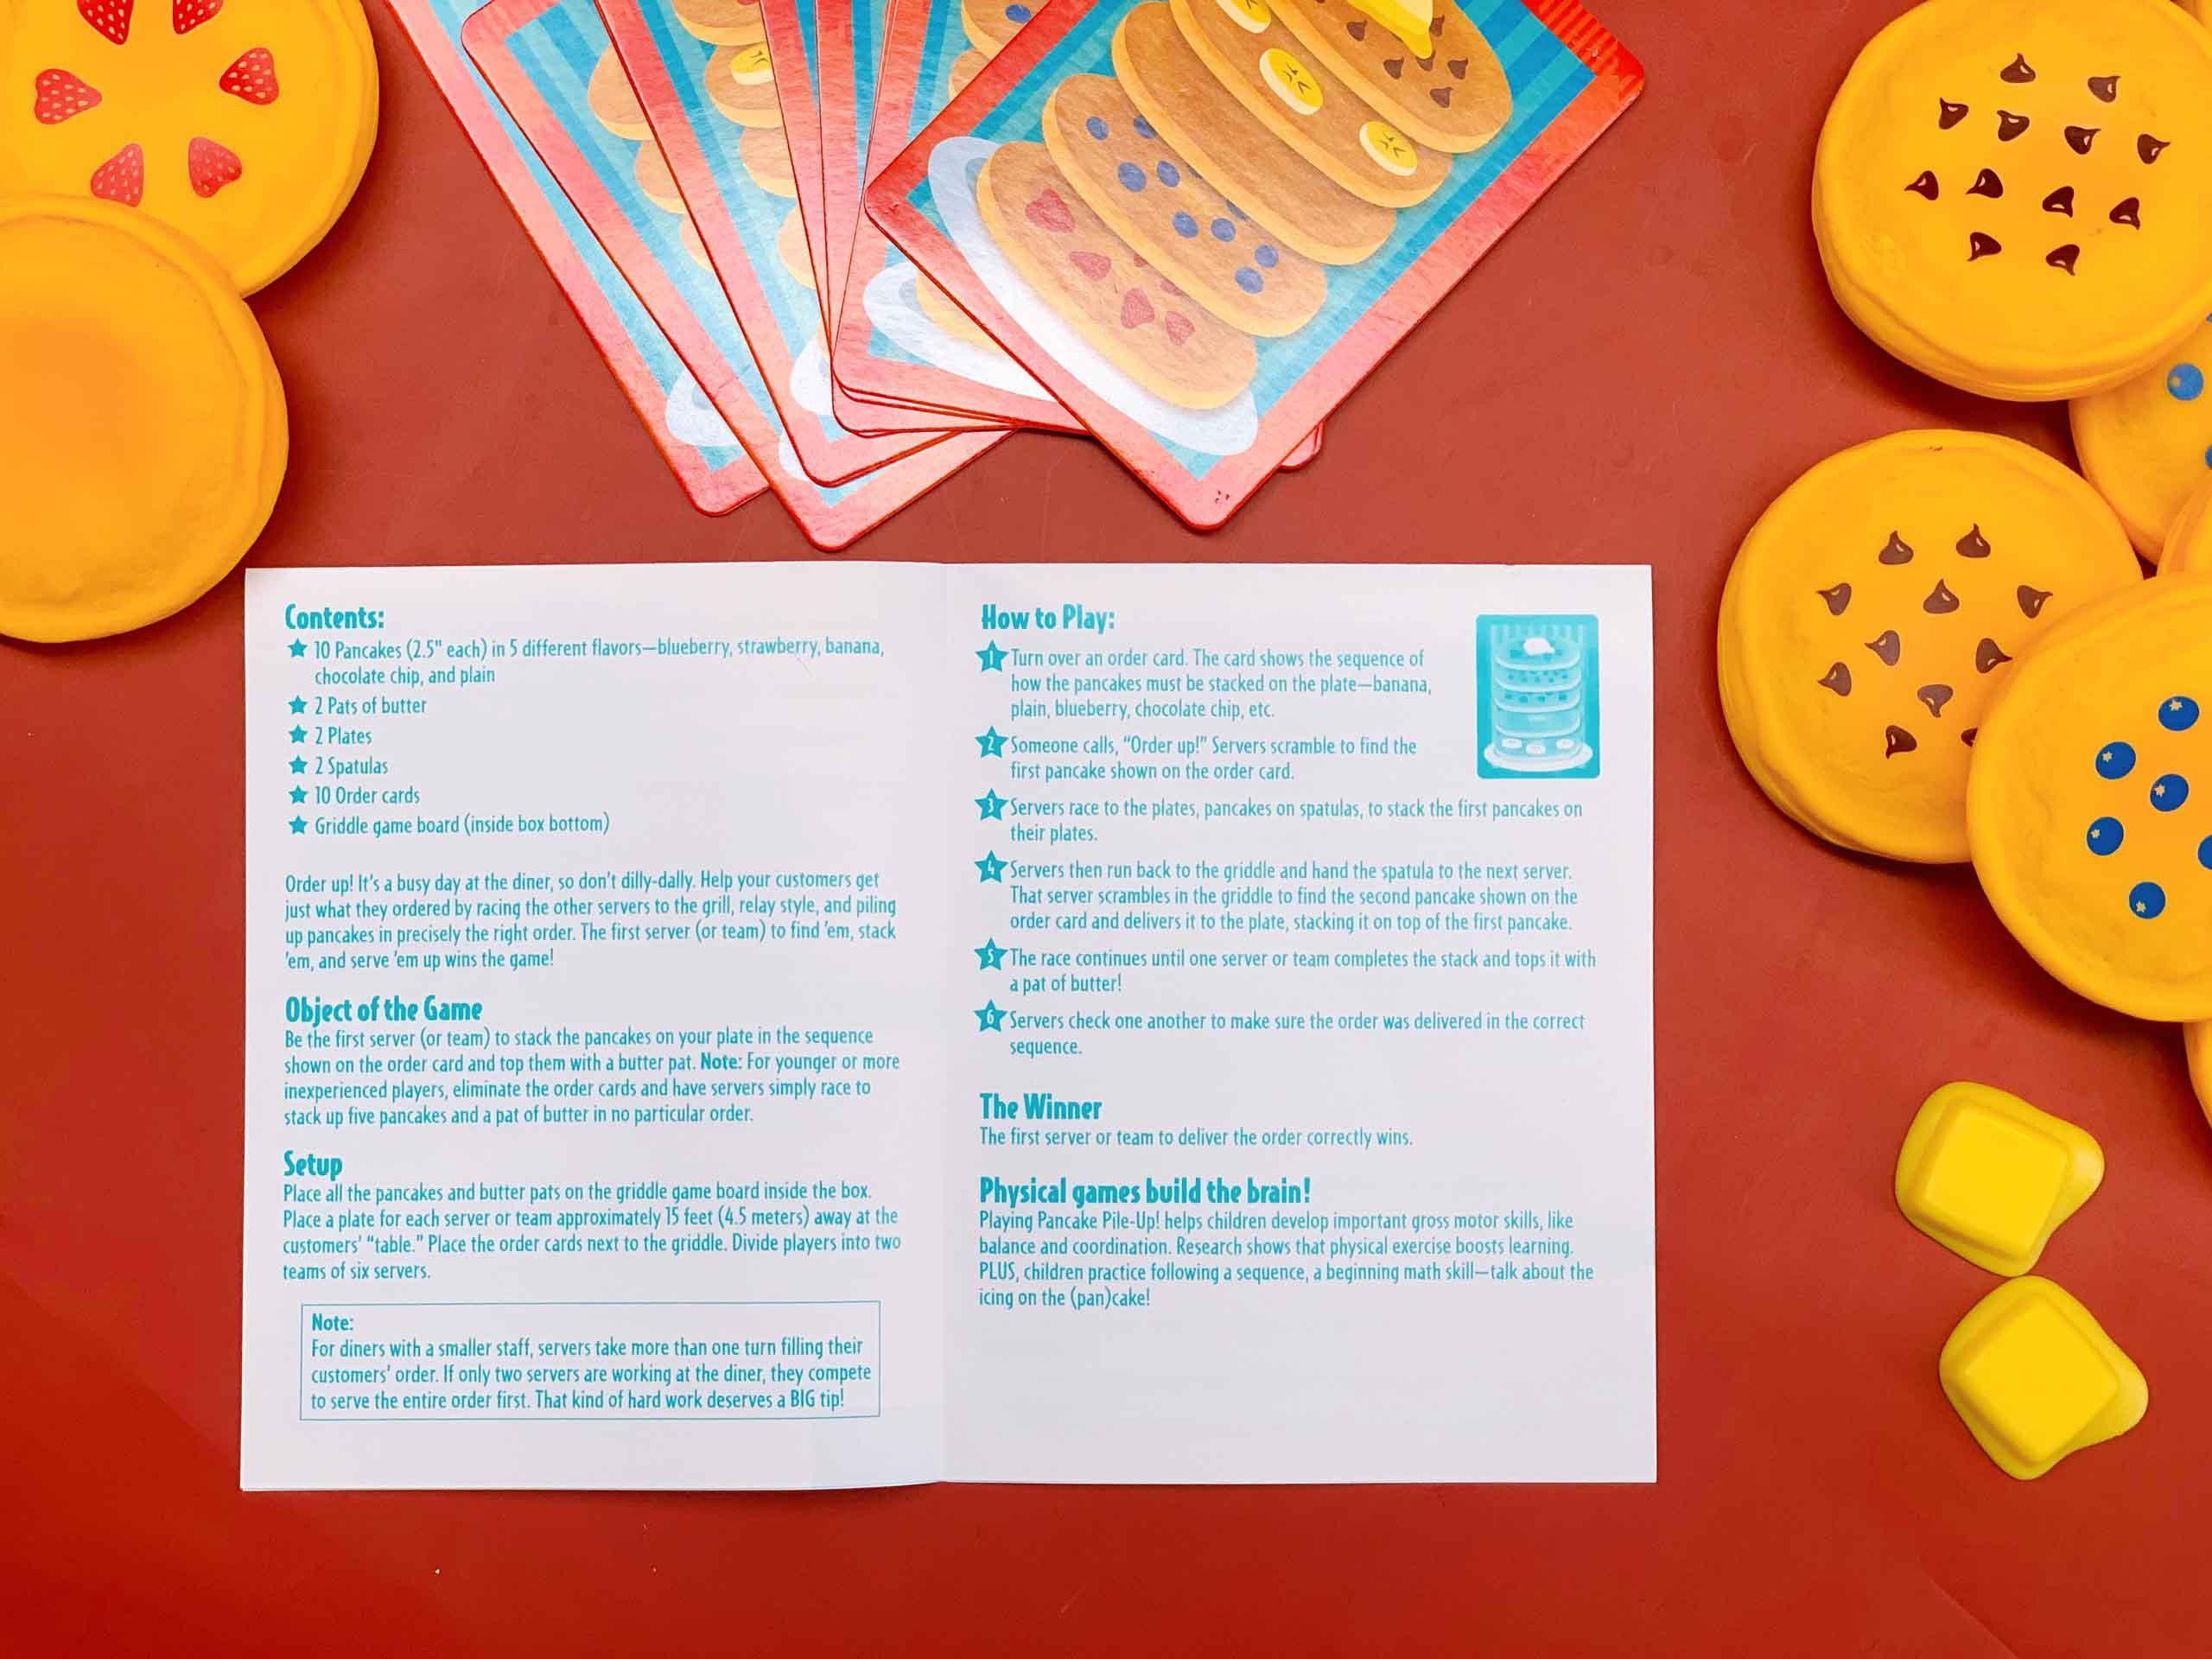 Educational Insights Bộ đồ chơi phát triển kỹ năng vận động, toán học và làm việc nhóm - Pancake Pile-Up! Relay Game